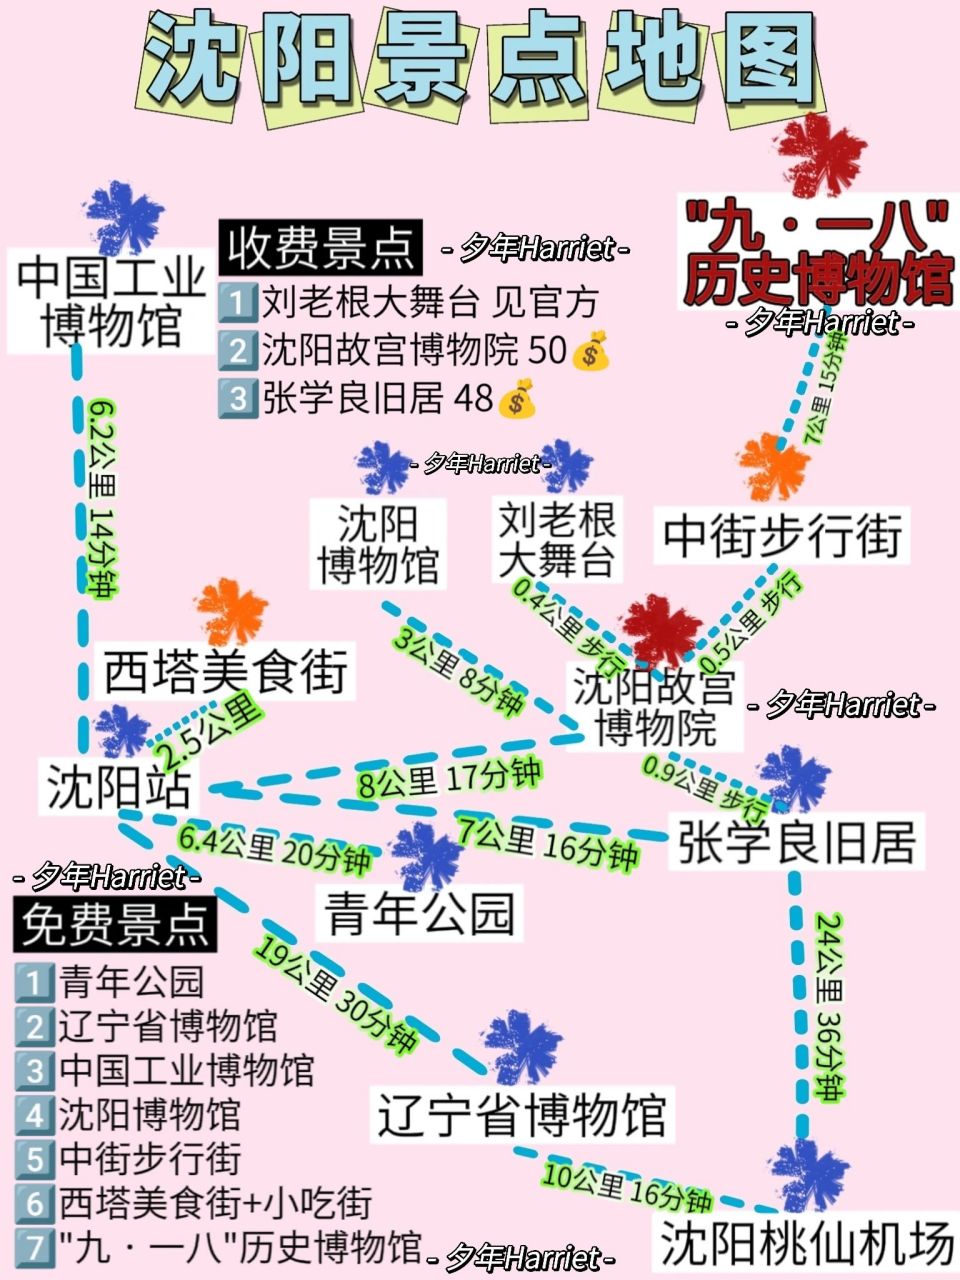 沈阳交通地图最新版图片